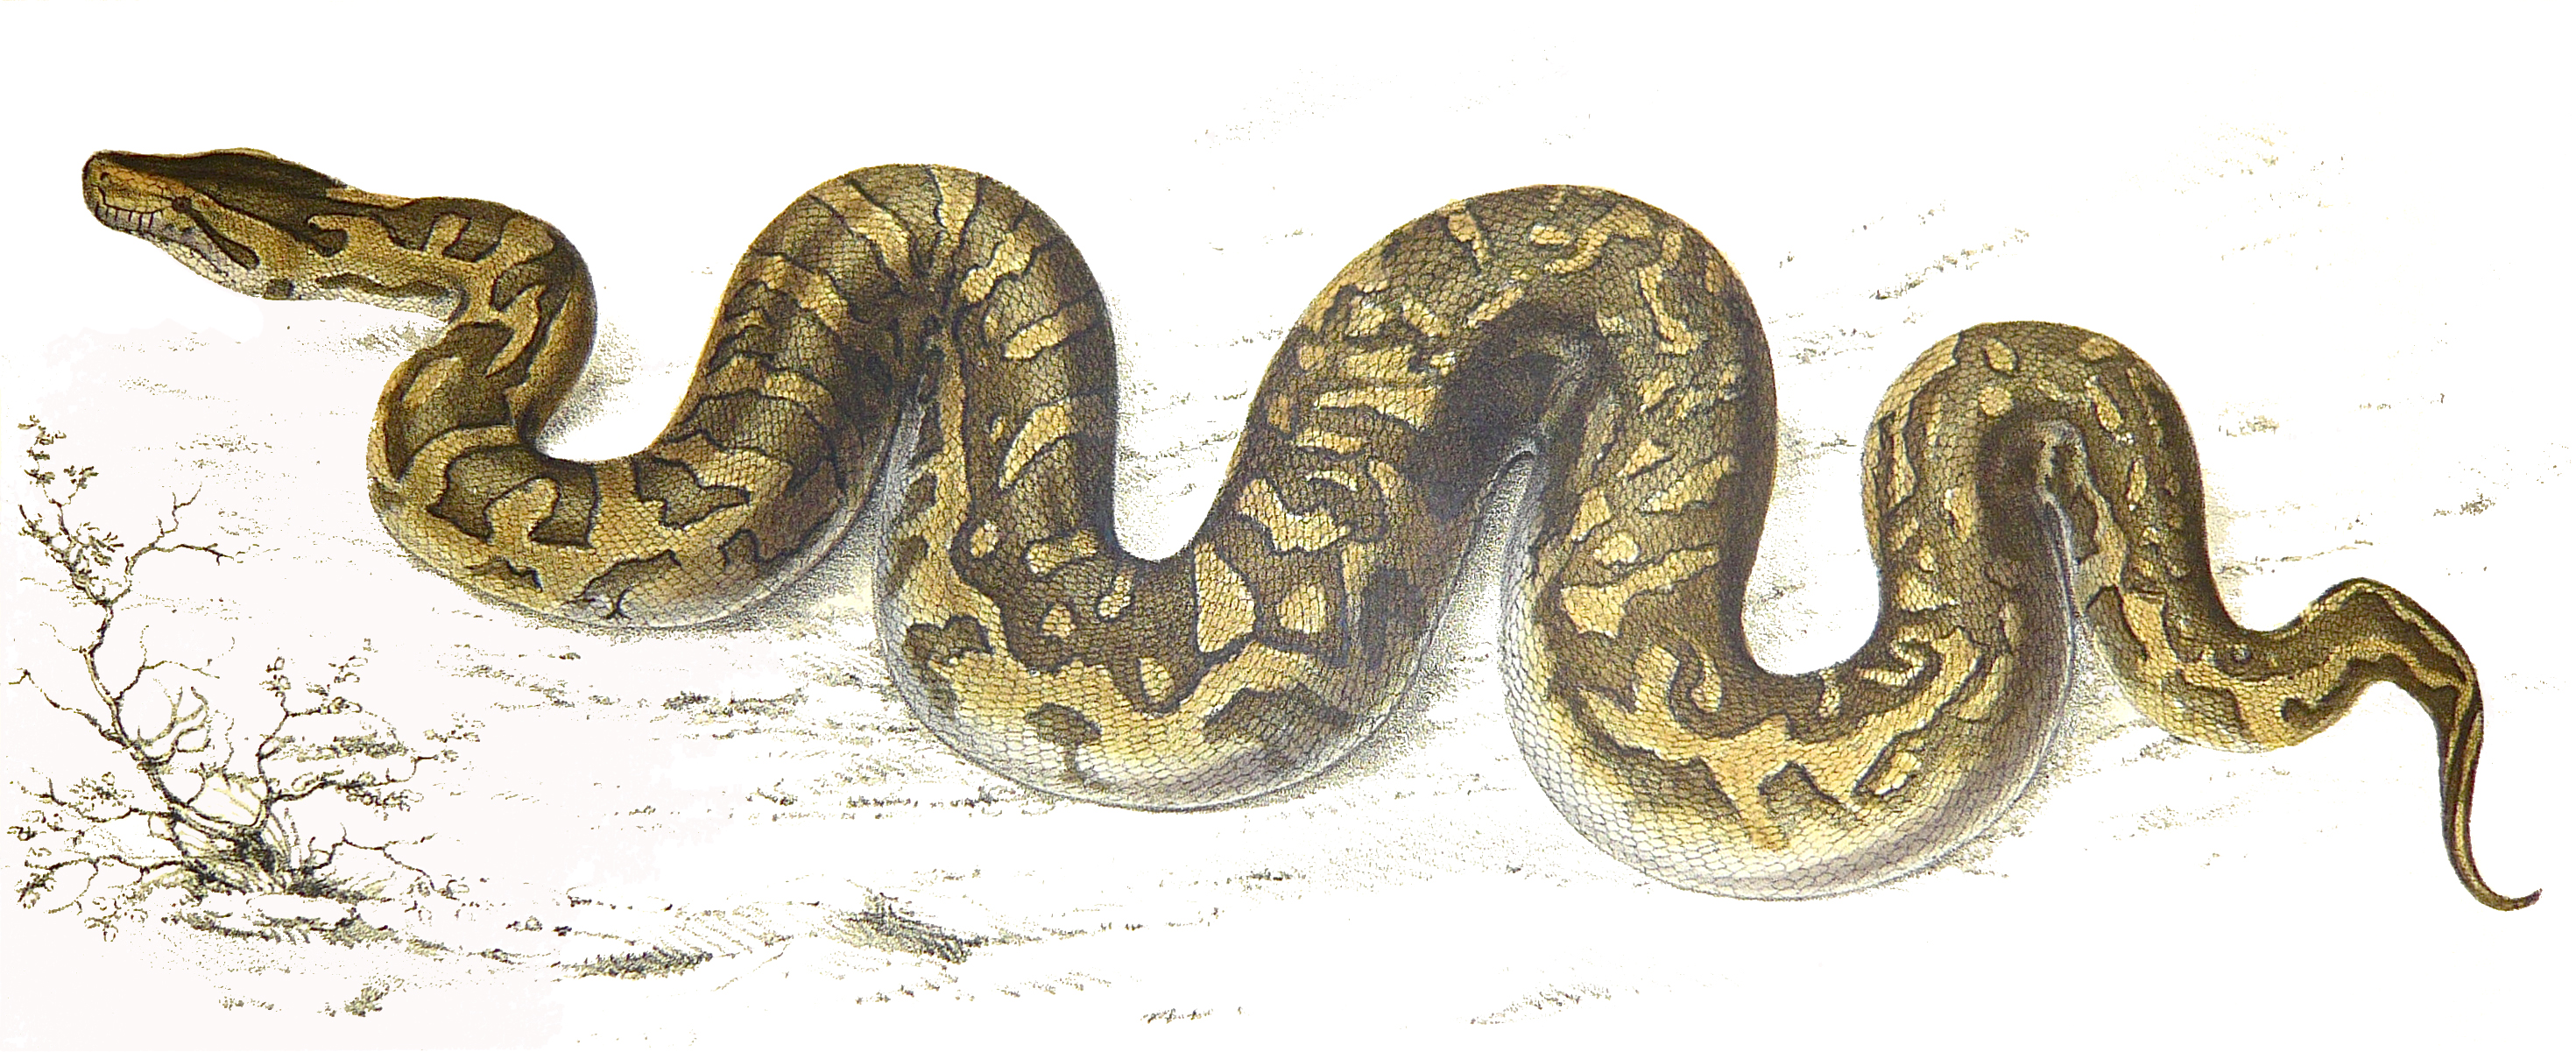 Python Pics, Animal Collection